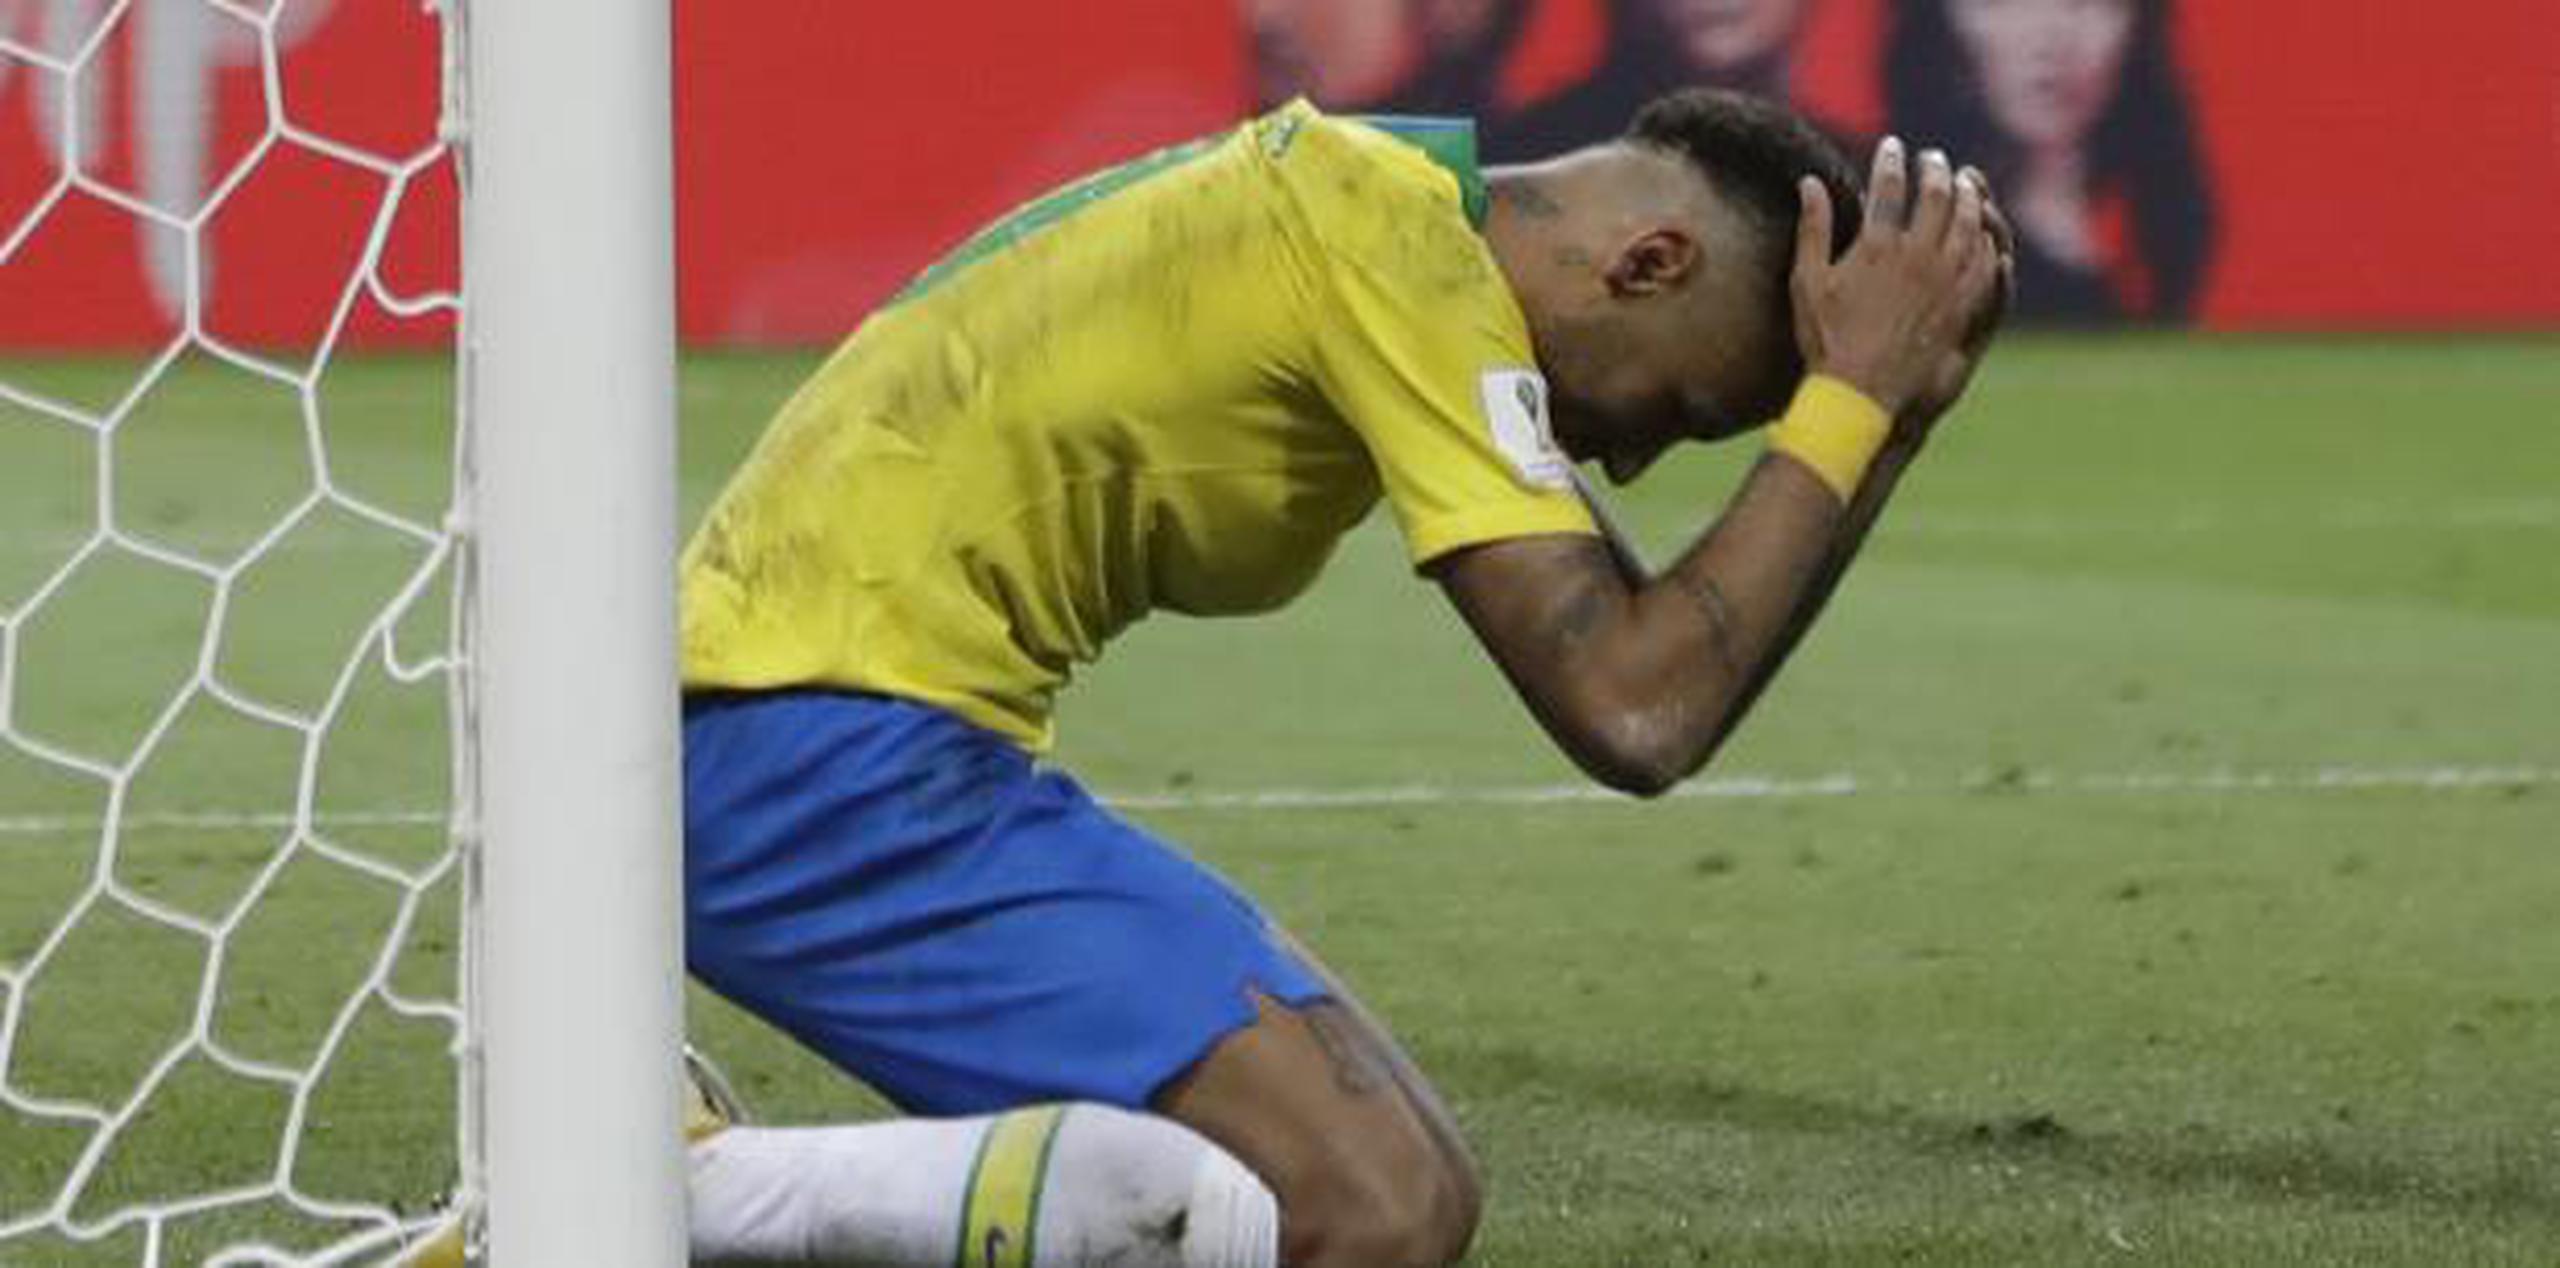 Brasil fue eliminado del Mundial tras su derrota ante Bélgica en los cuartos de final. (AP / Francisco Seco)